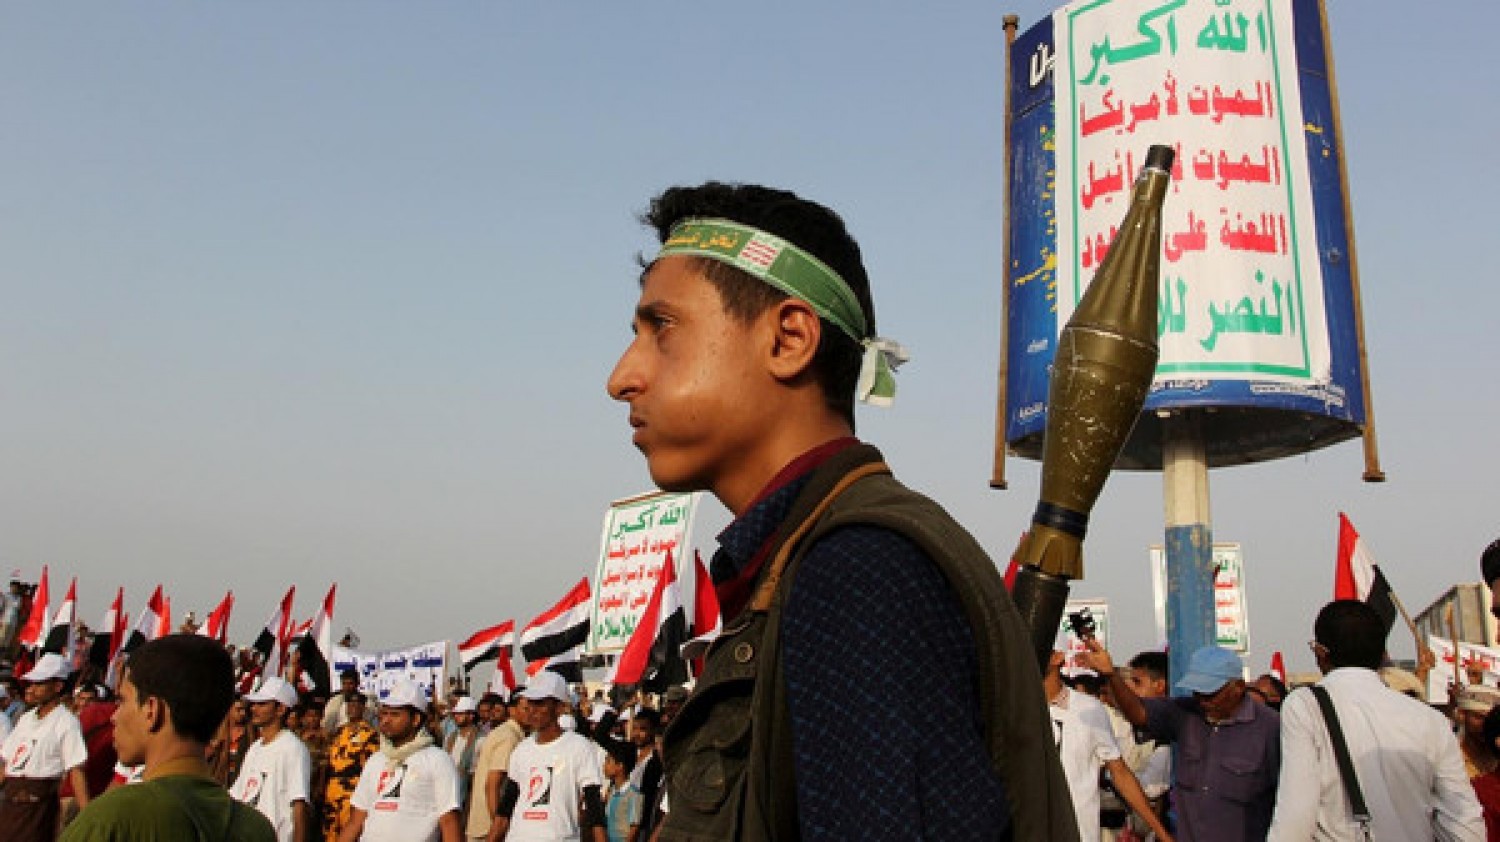 مليشيا الحوثي تفرض إتاوات مالية على طلبة المدارس في حجة